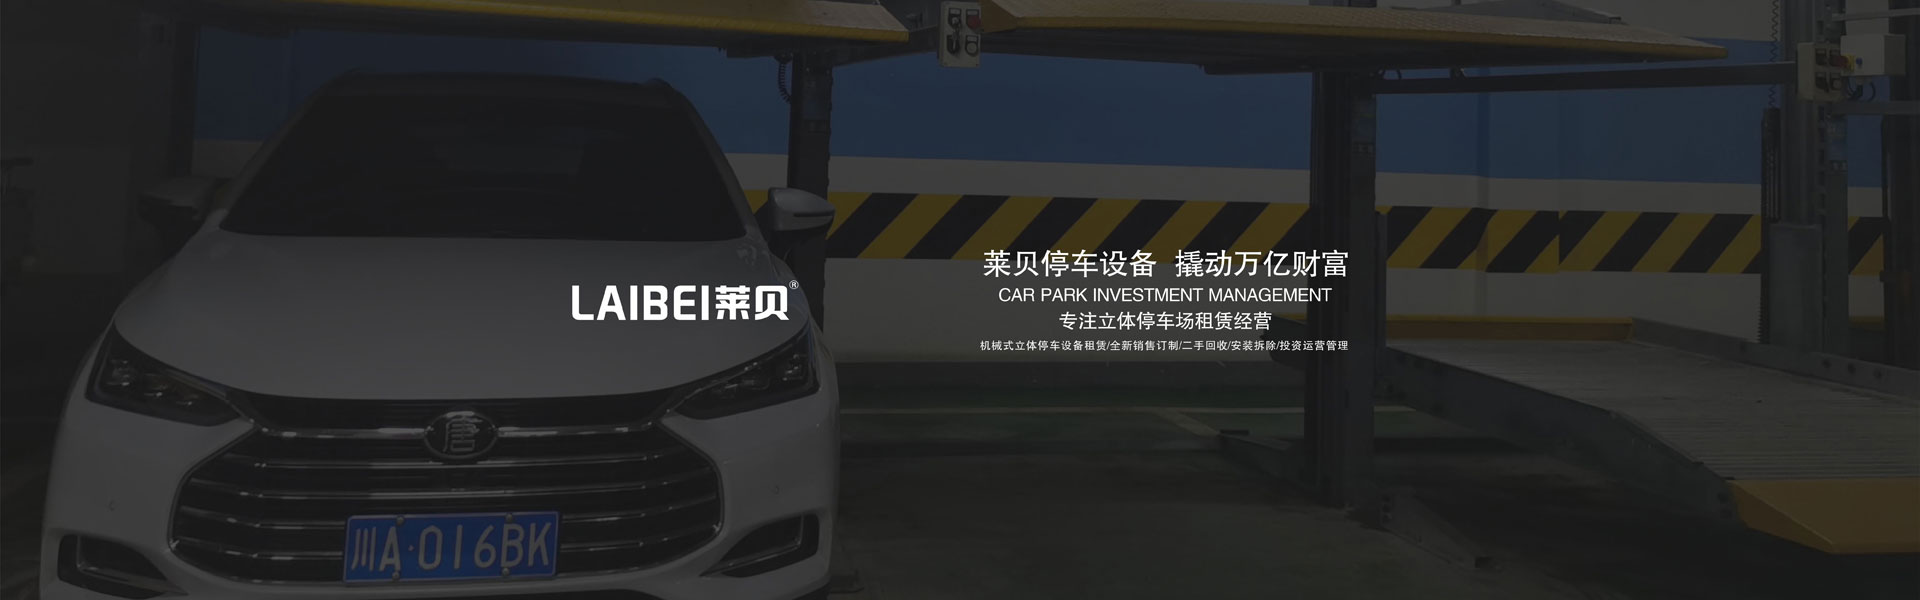 鶴慶簡易式機械式停車位出租